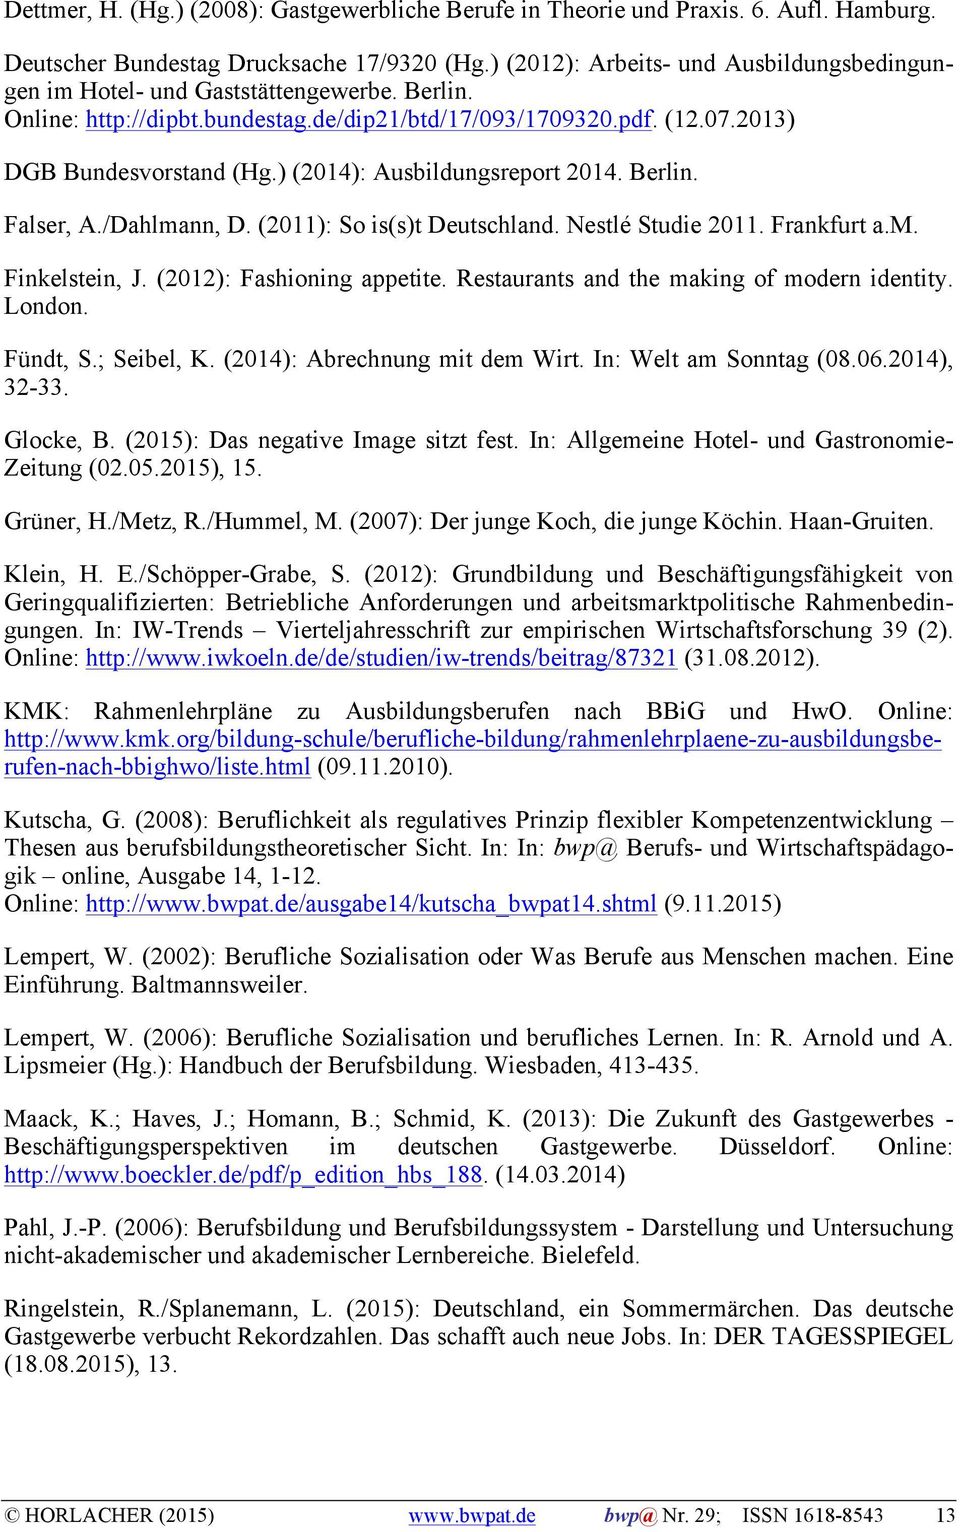 ) (2014): Ausbildungsreport 2014. Berlin. Falser, A./Dahlmann, D. (2011): So is(s)t Deutschland. Nestlé Studie 2011. Frankfurt a.m. Finkelstein, J. (2012): Fashioning appetite.